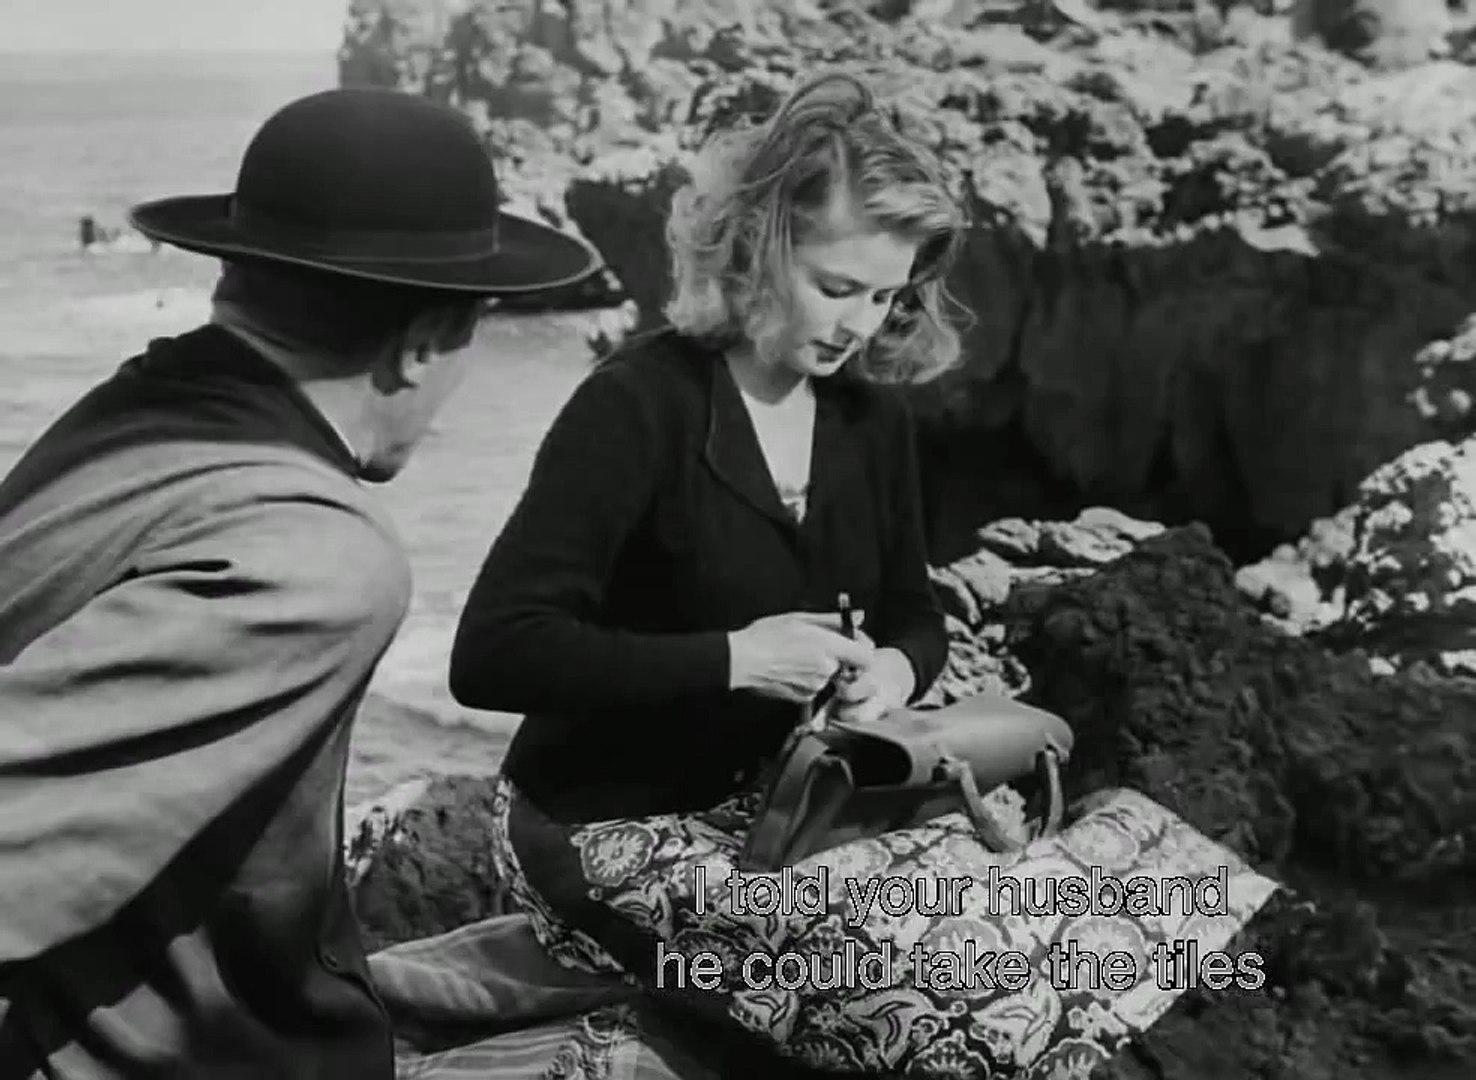 Ingrid Bergman in Stromboli in 1950 starring in Rossellini’s movie.